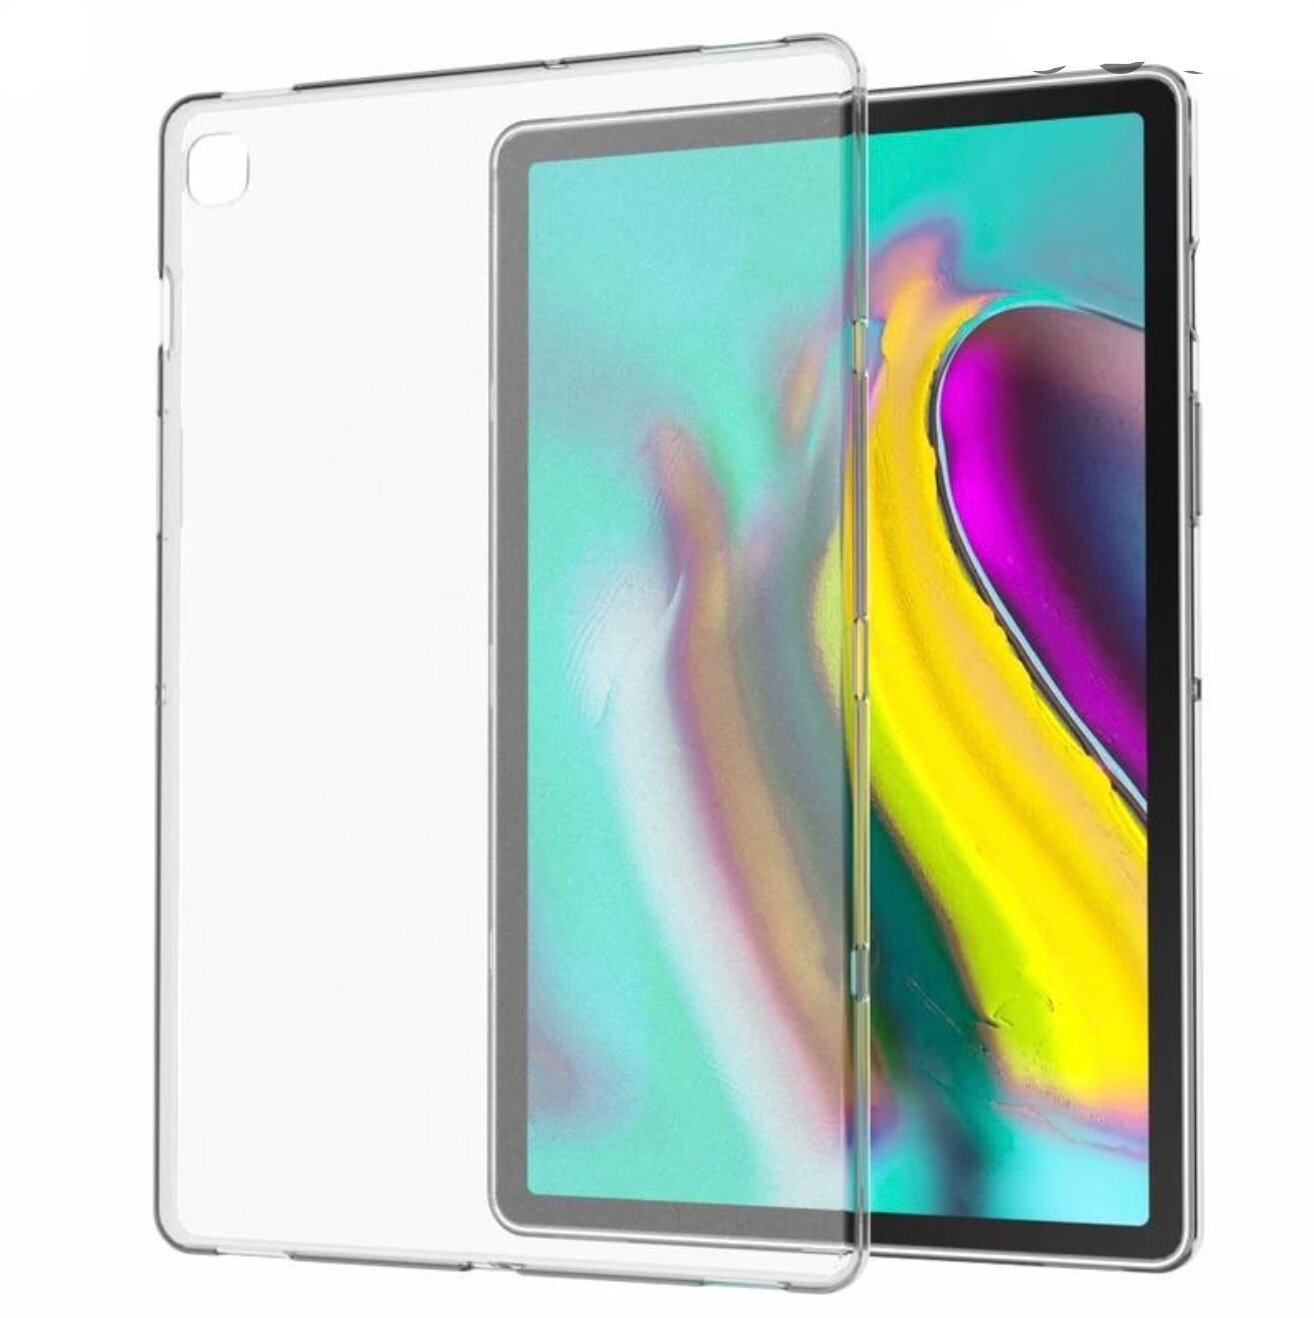 Чехол панель-накладка MyPads для Samsung Galaxy Tab S5e 10.5 SM-T720 / T725 (2019) ультра-тонкая полимерная из мягкого качественного силикона белая